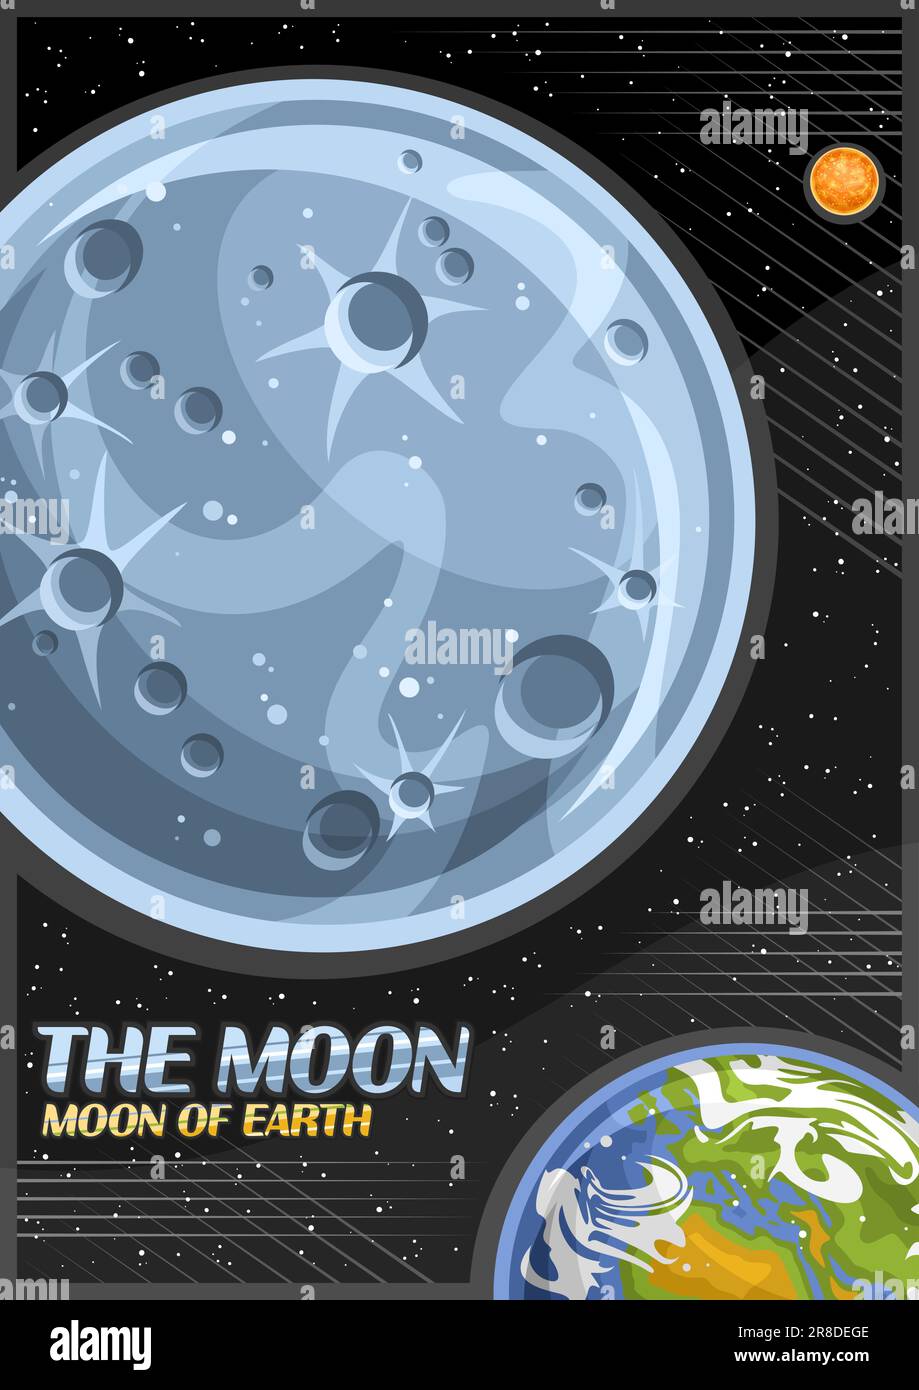 Affiche vectorielle pour la Lune, bannière verticale décorative avec illustration de la lune en pierre rotative autour de la planète Terre de la bande dessinée sur fond étoilé noir Illustration de Vecteur